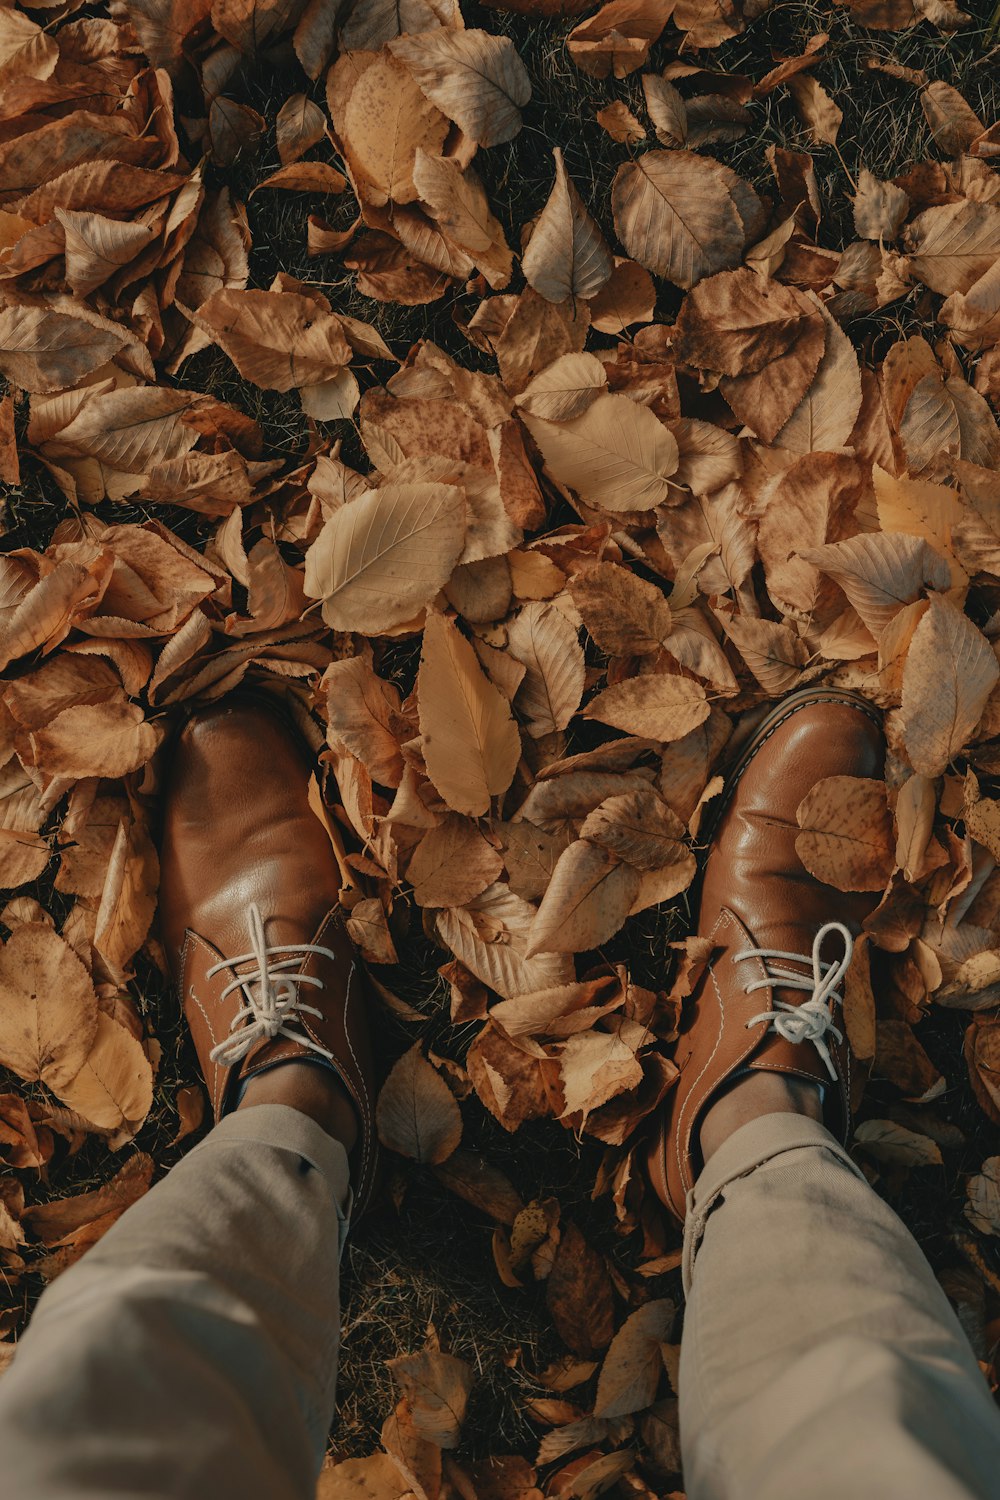 Persona con zapatos de cuero marrón de pie sobre hojas secas